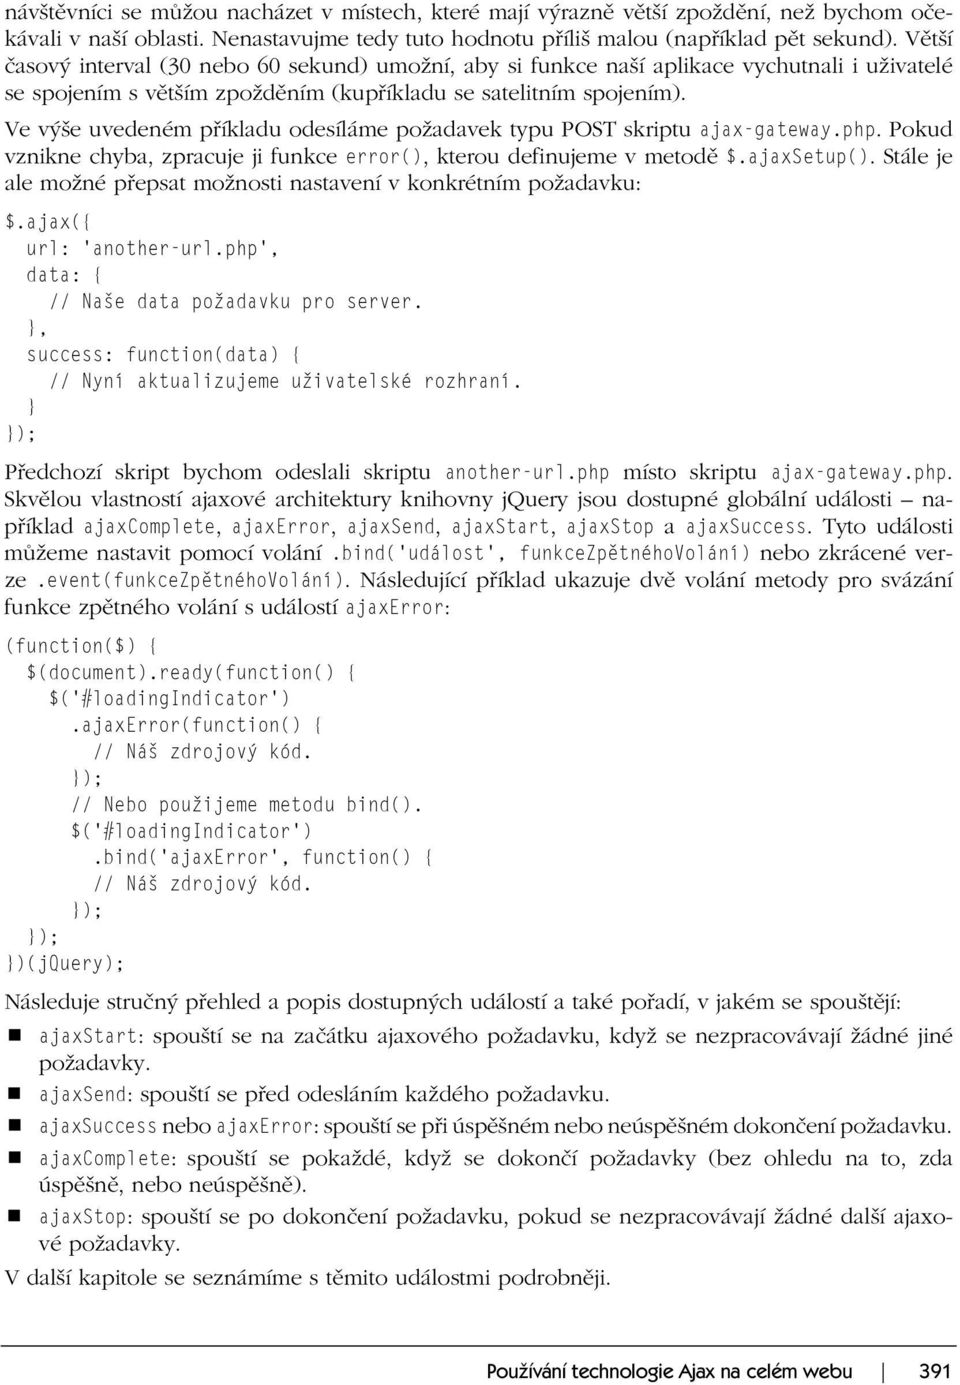 Ve výše uvedeném příkladu odesíláme požadavek typu POST skriptu ajax-gateway.php. Pokud vznikne chyba, zpracuje ji funkce error(), kterou definujeme v metodě $.ajaxsetup().